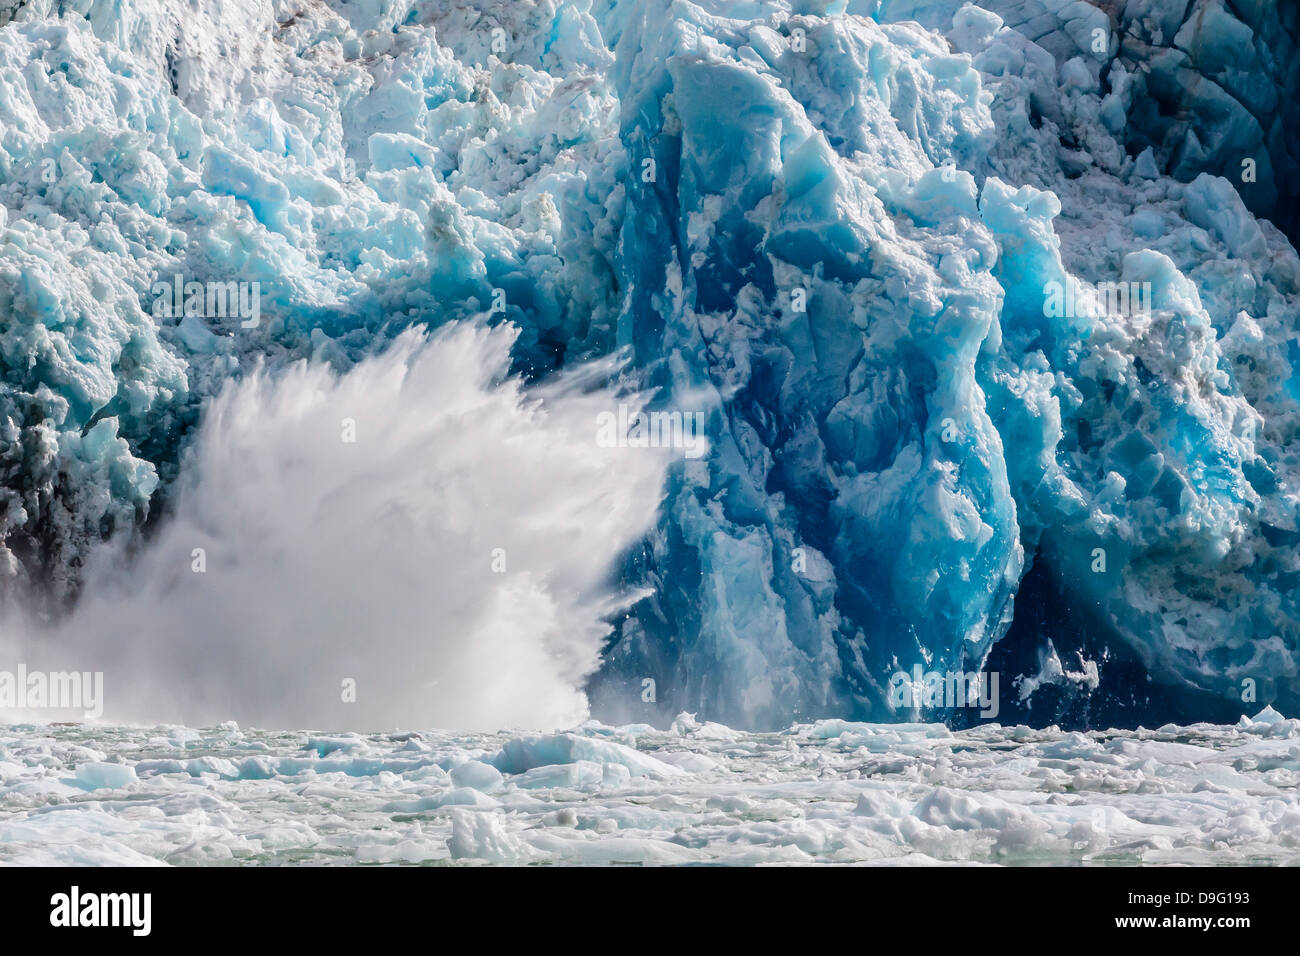 South Sawyer Glaciar parto, Tracy Arm-Ford Terror del área silvestre, al sureste de Alaska, EE.UU. Foto de stock